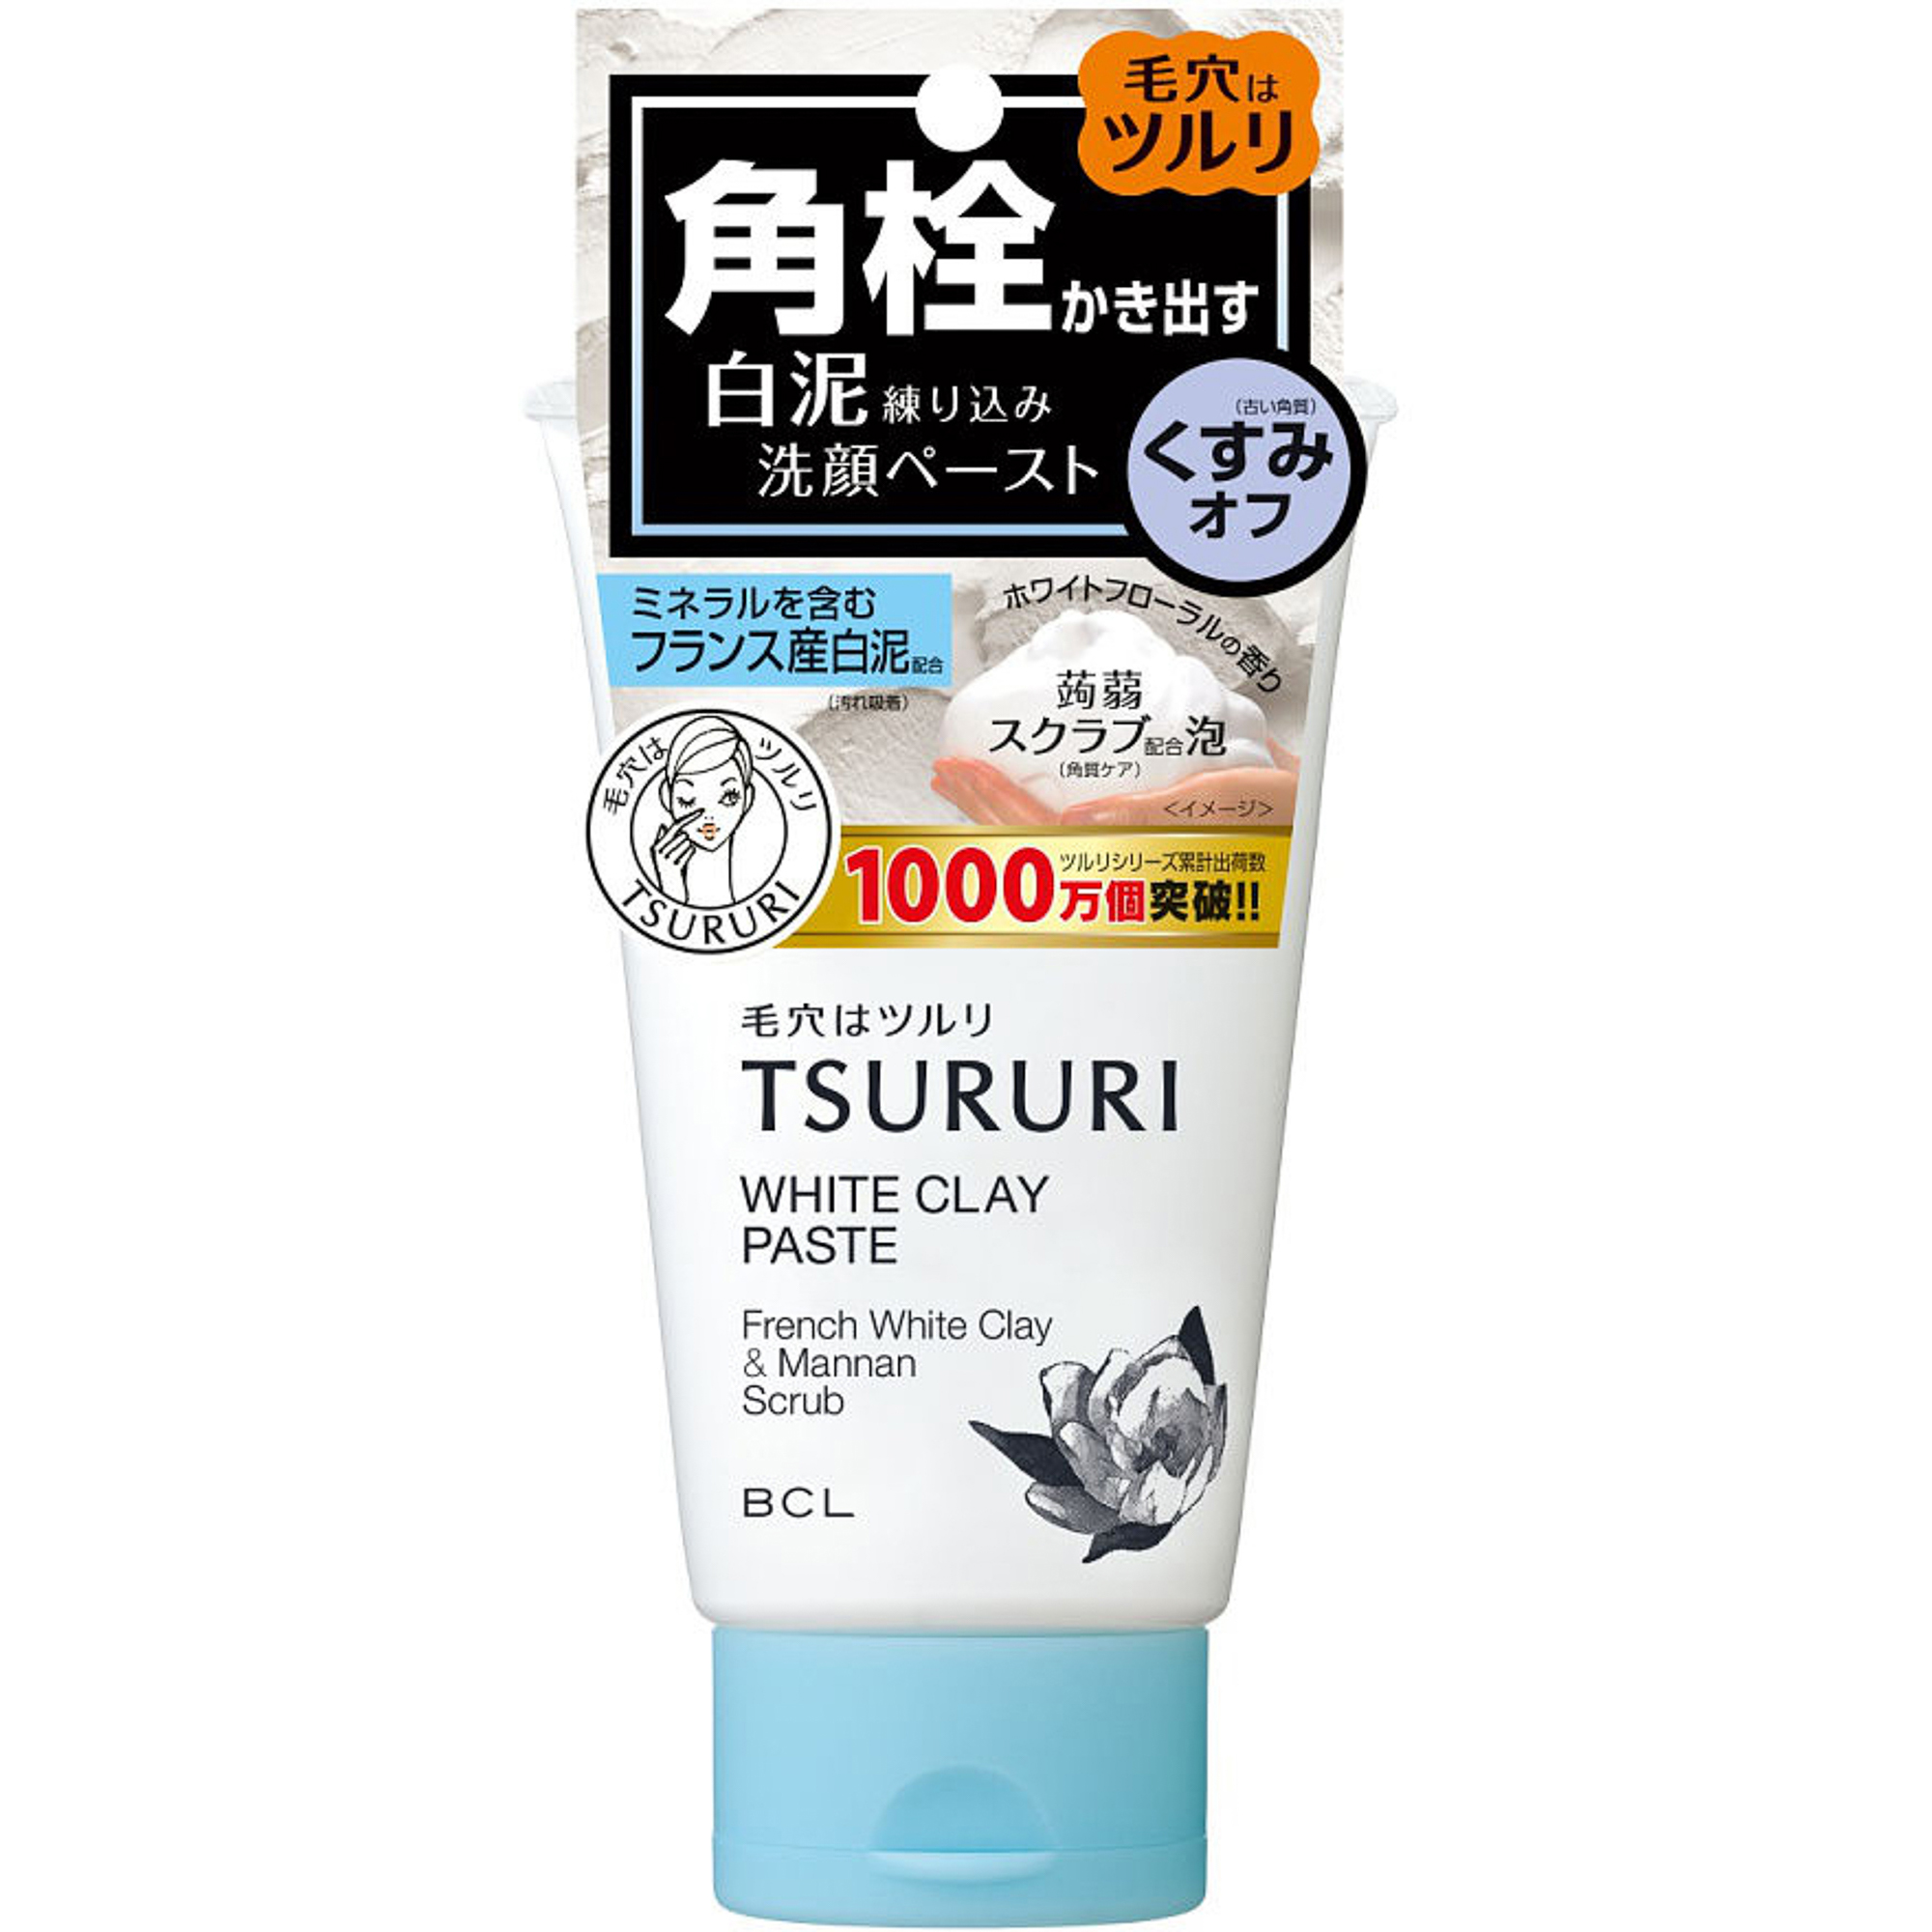 Пенка-скраб Tsururi для глубокого очищения кожи с французской белой глиной и японским маннаном 120 г щетка утюжок для очищения кожи hi tech industries